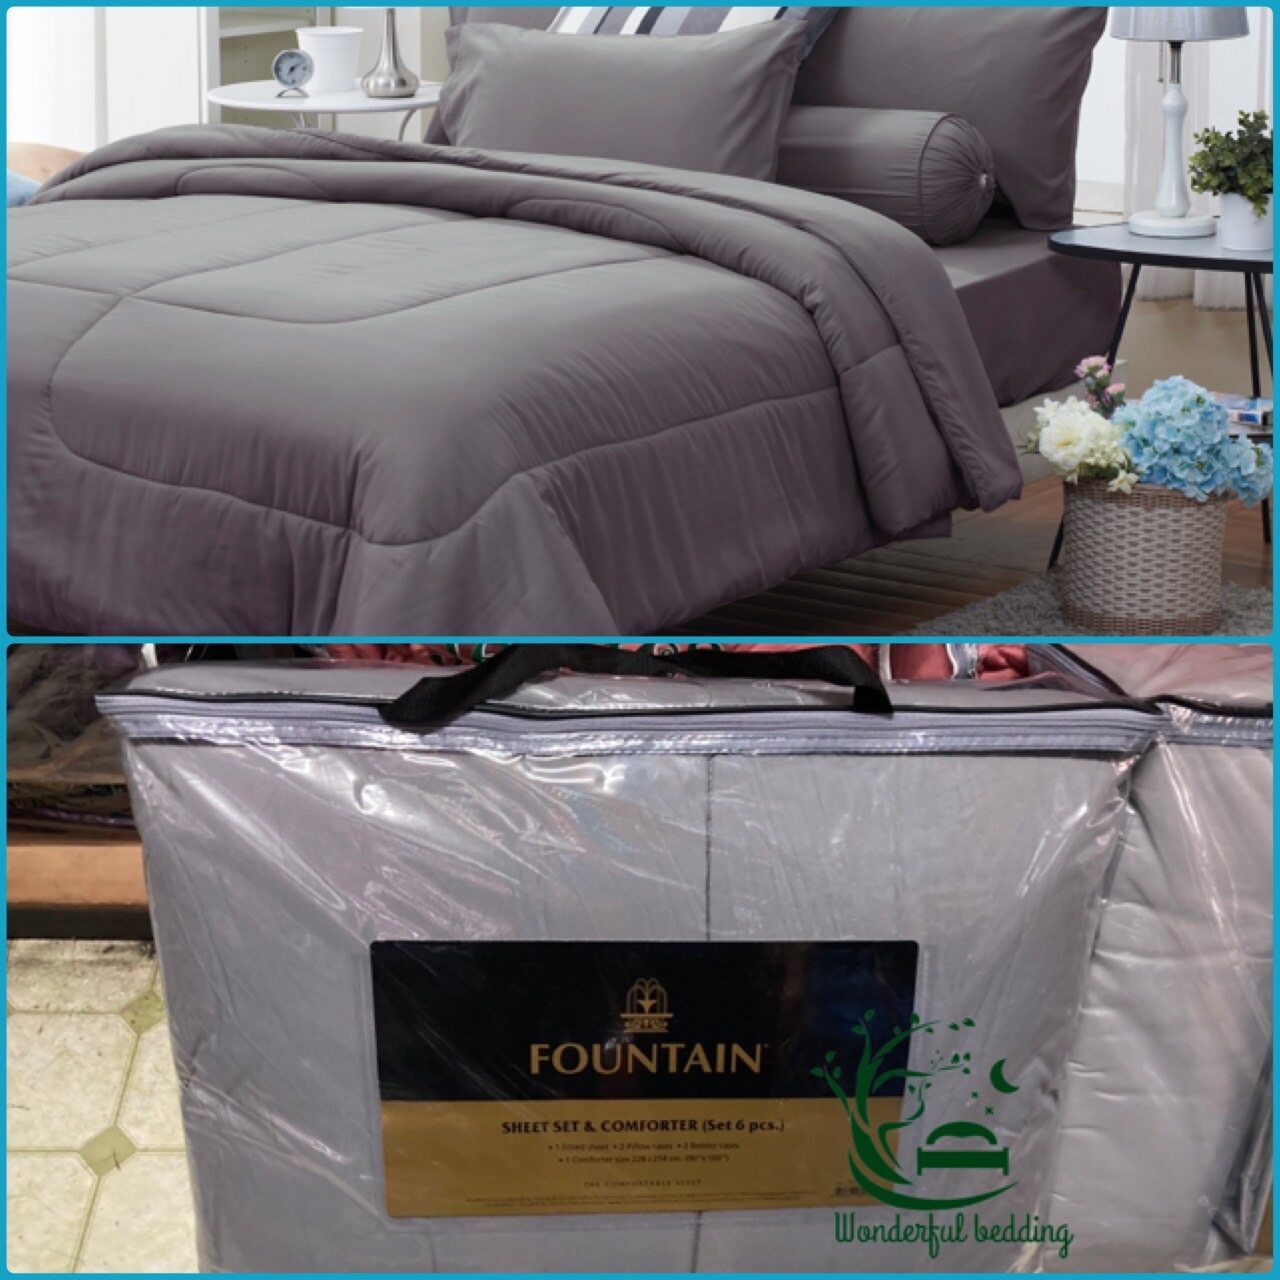 FOUNTAIN ผ้านวม + ชุดผ้าปู ผ้าปู ที่นอน แท้ 100% FTC สีพื้น เขียว Green Gray เทา ขนาด 3.5 5 6ฟุต ชุดเครื่องนอน ผ้านวม ผ้าปูที่นอน wonderful bedding  สี → Gray2ขนาดสินค้า 6 ฟุต